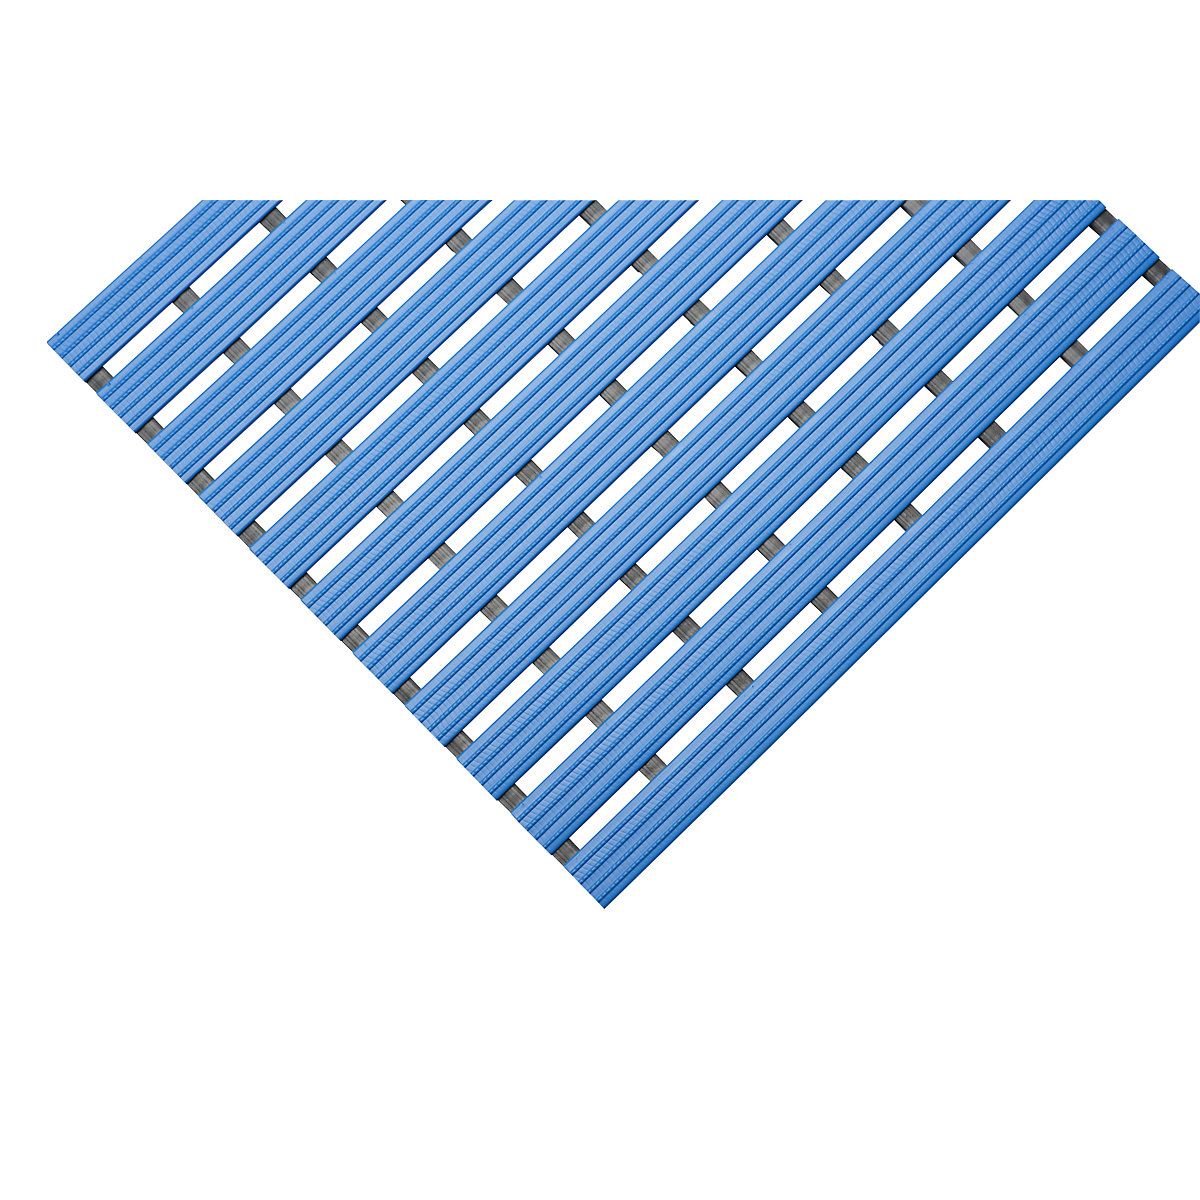 PVC profilová rohožka, na bežný m, pojazdná plocha z tvrdého PVC, protišmyková, šírka 600 mm, modrá